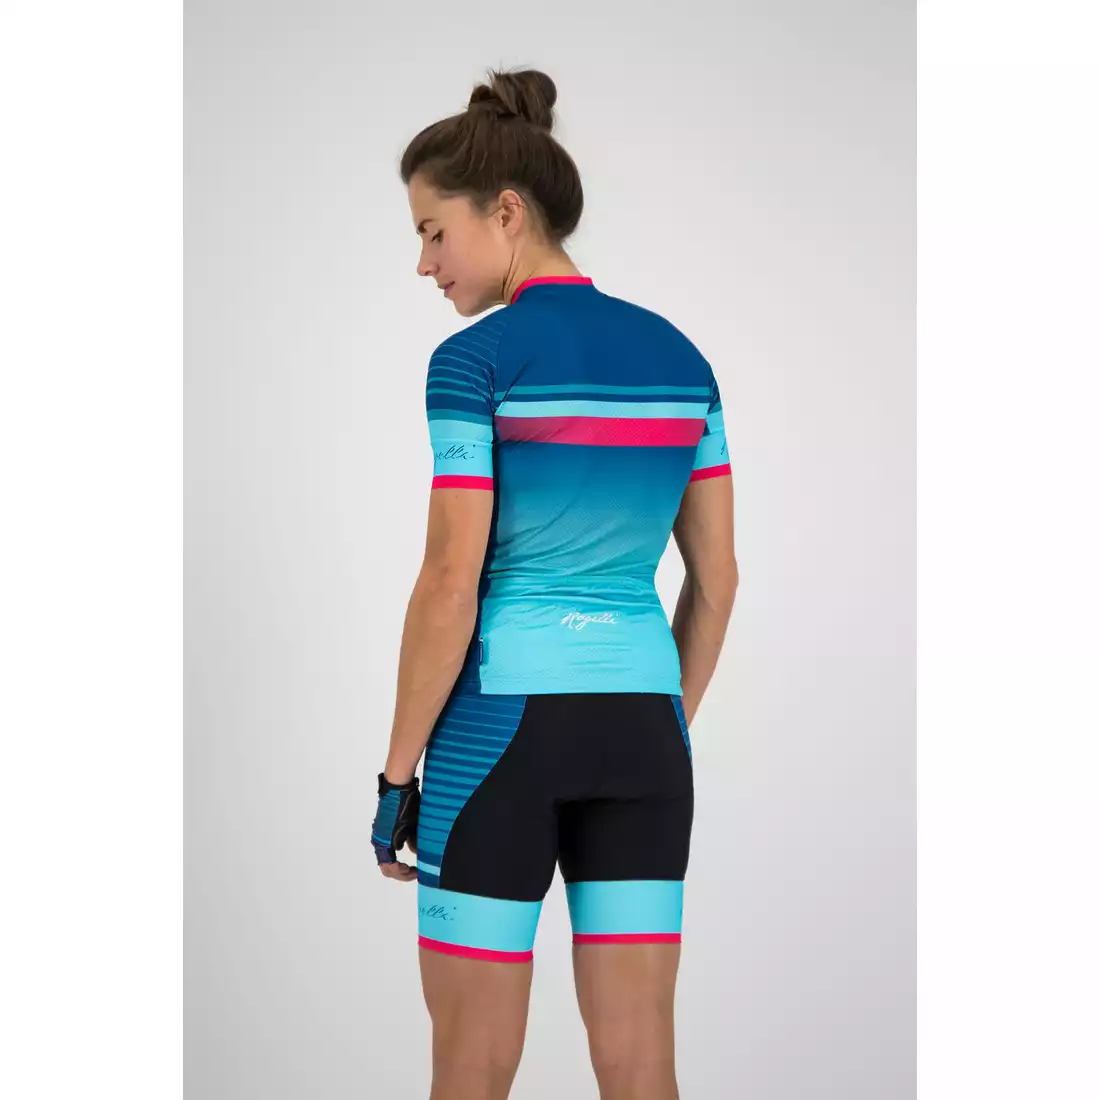 Rogelli Impress 010.160 damska koszulka rowerowa Niebieski/różowy